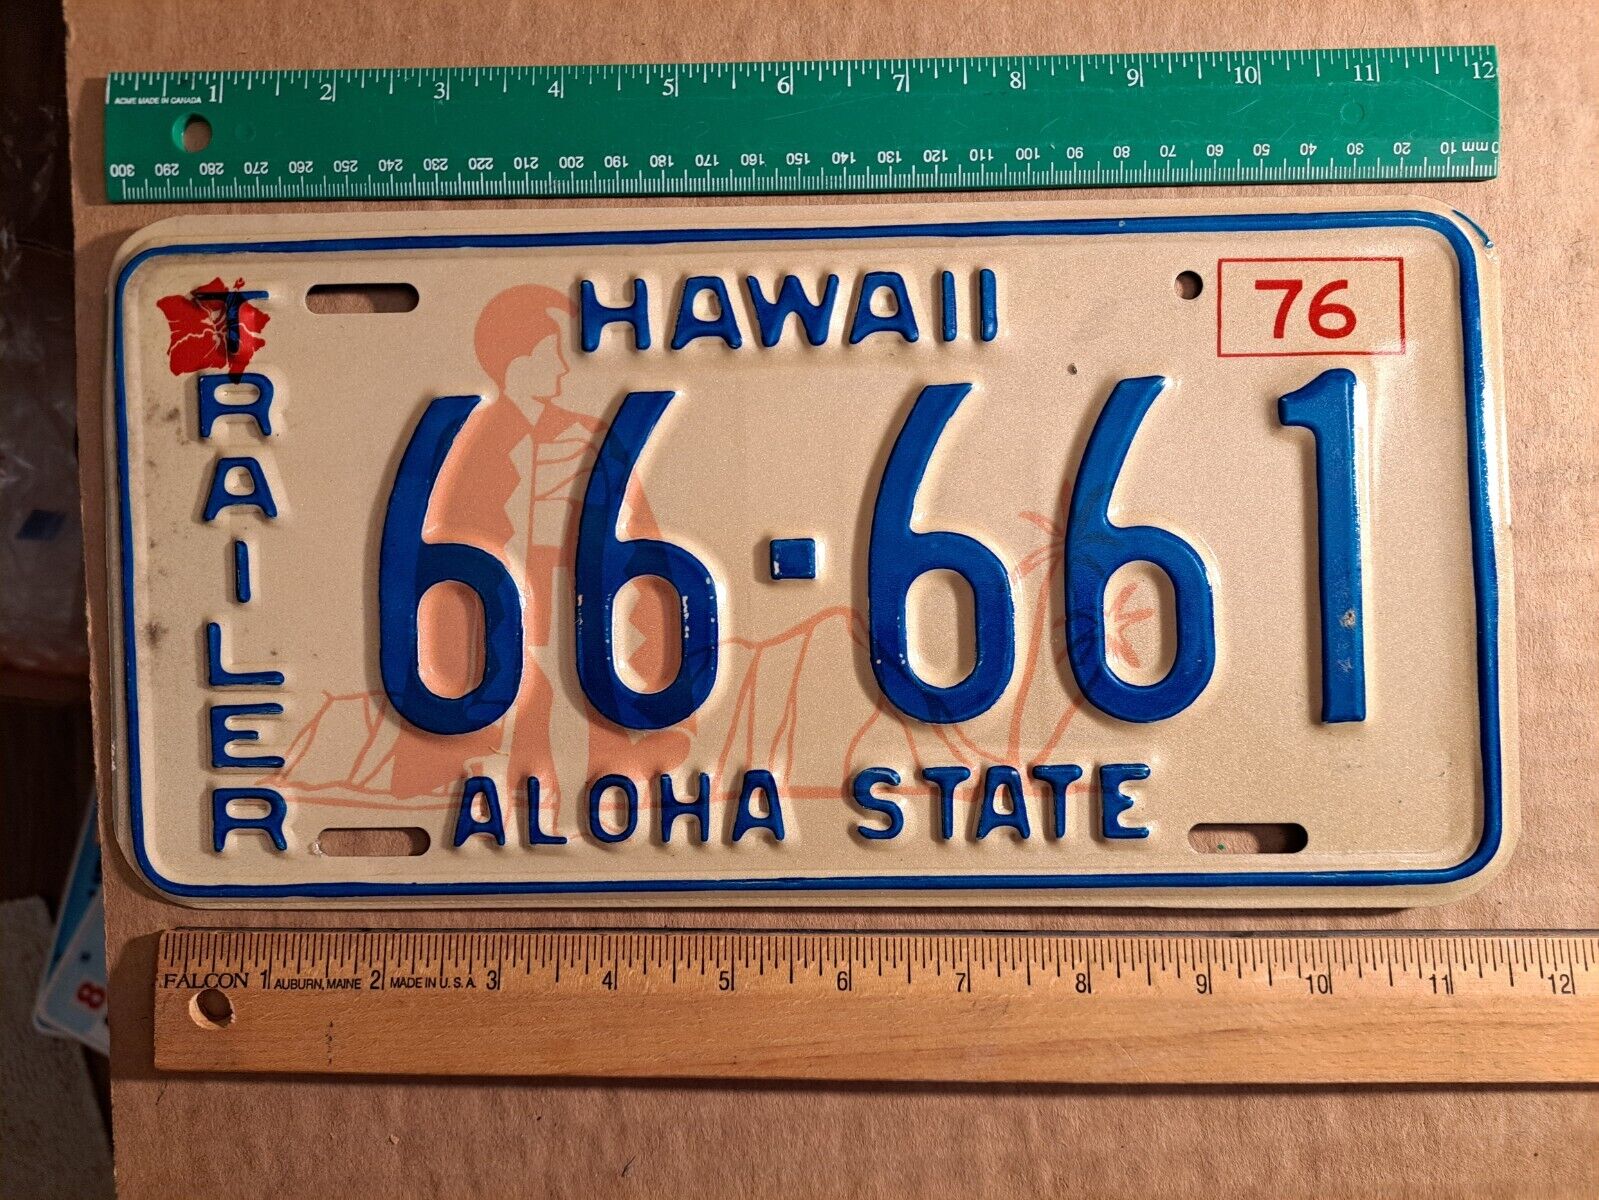 License Plate, Hawaii, 1976 Bicentennial, Quadruple 6: 6666 1, 66-661